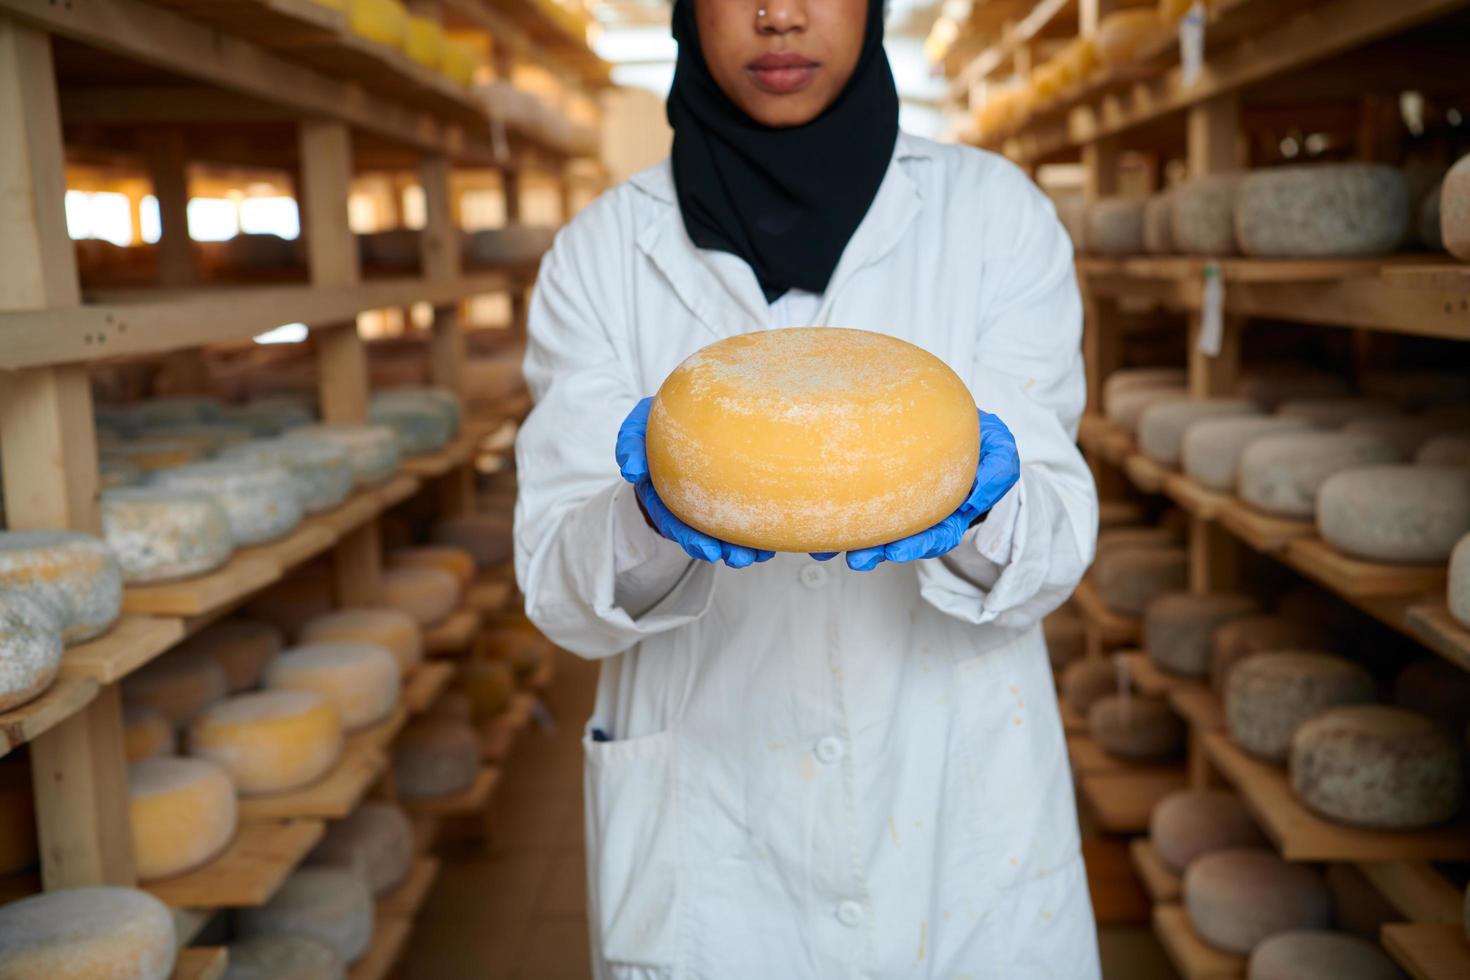 Afrikaanse zwart moslim bedrijf vrouw in lokaal kaas productie bedrijf foto